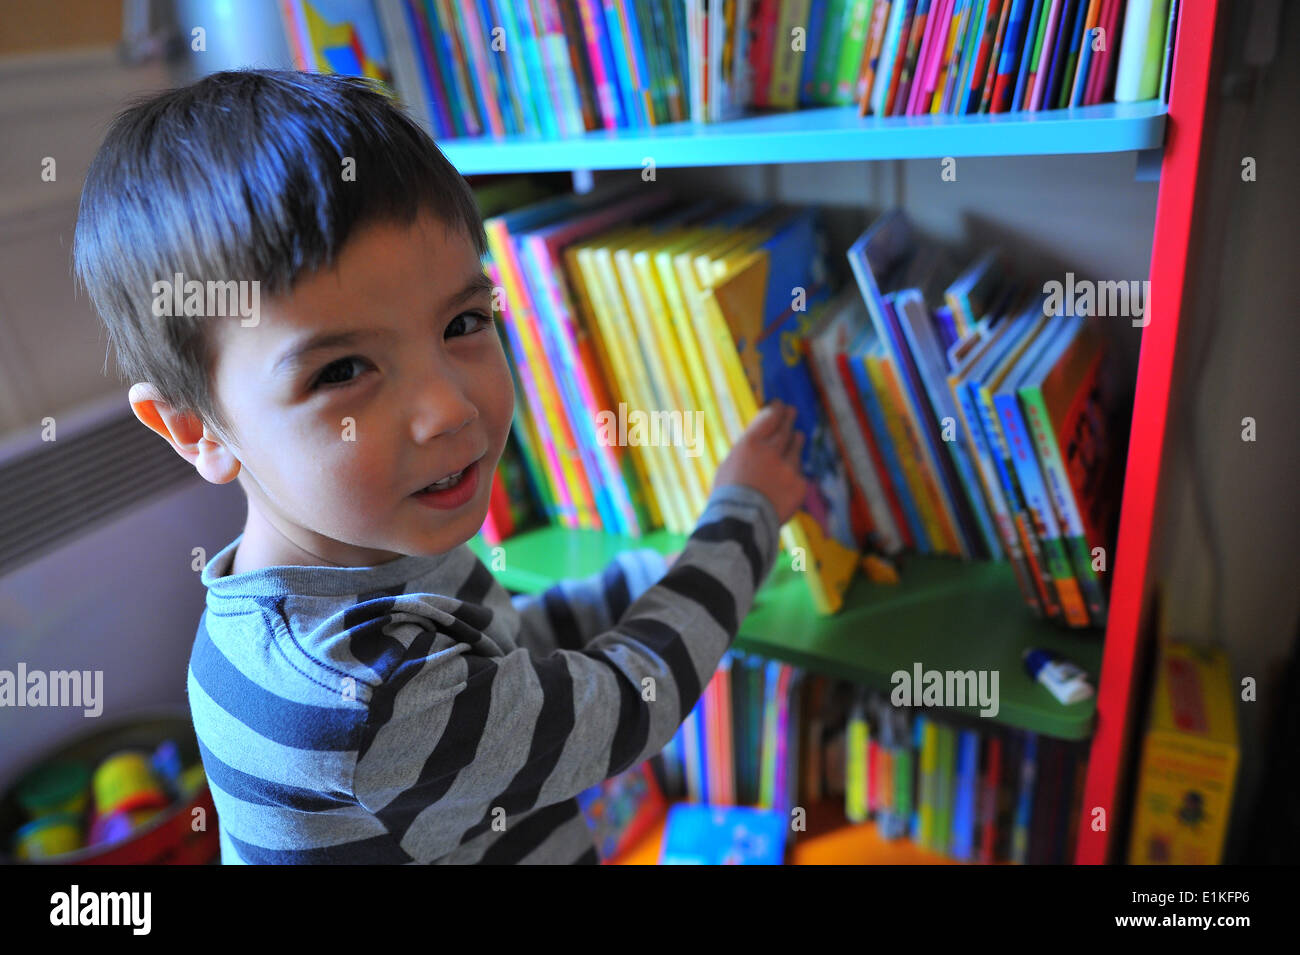 4-year-old boy picking un livre de sa bibliothèque Banque D'Images